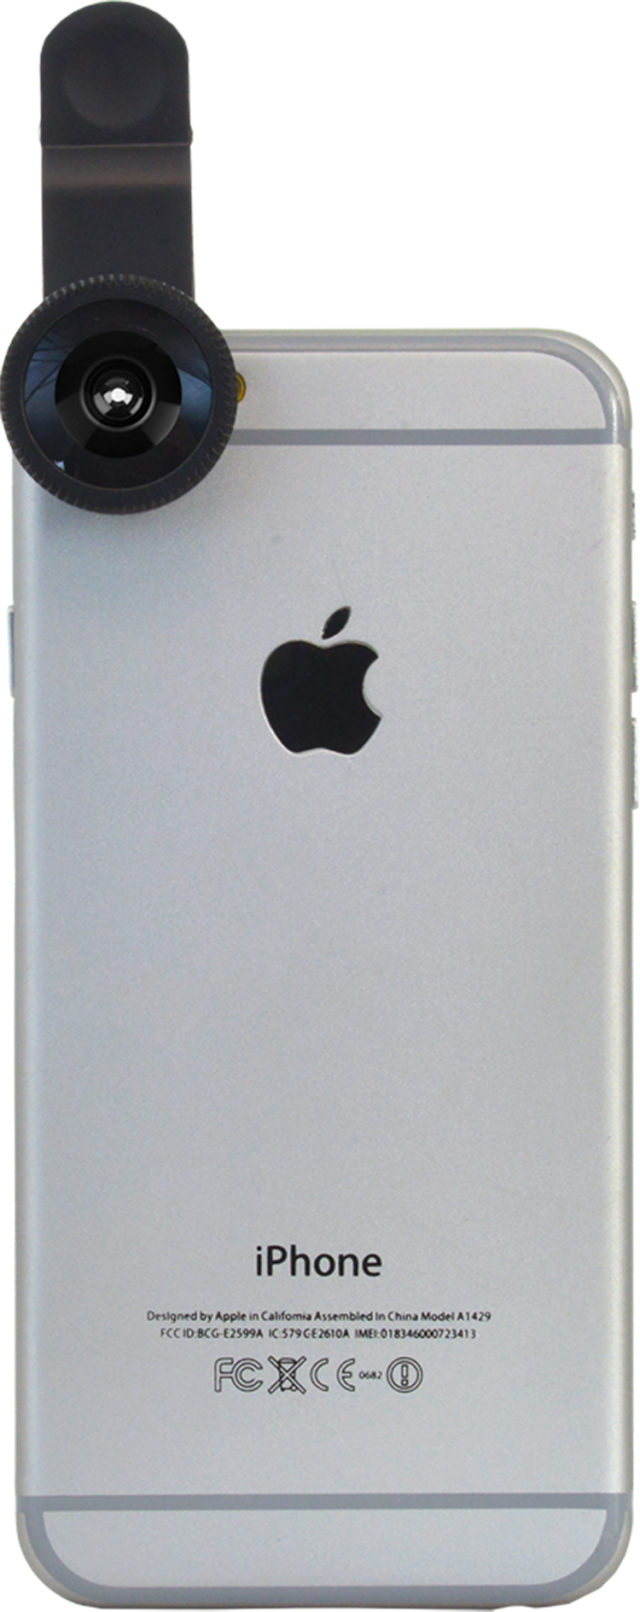 Clip lentille Fisheye pour smartphone (noir) - Packshot